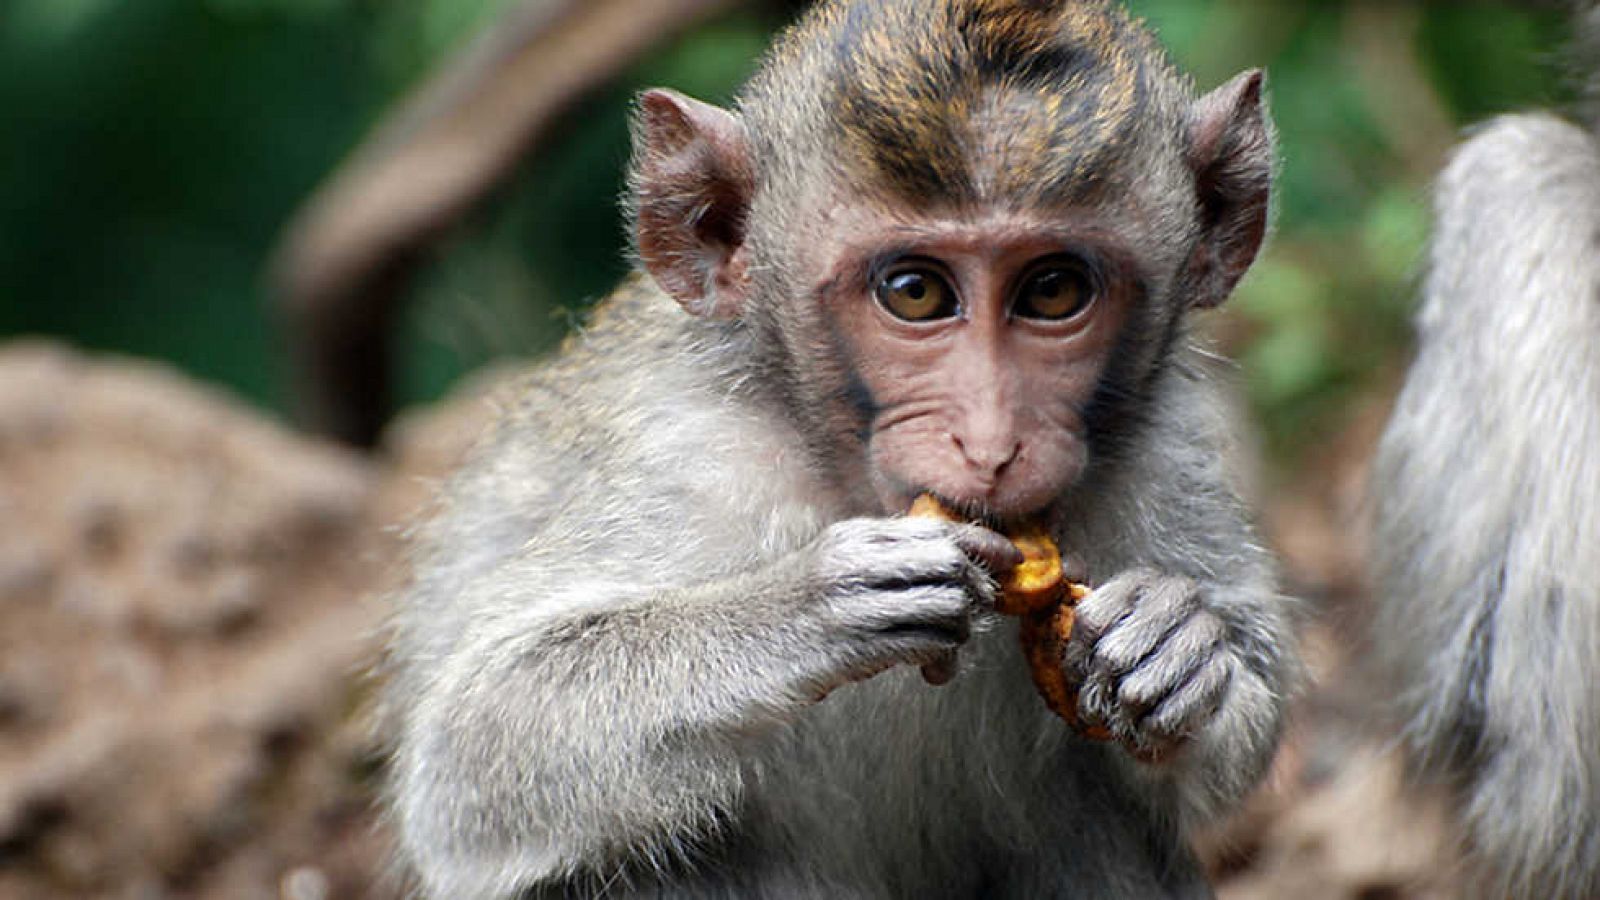 Grandes documentales - La vida en el planeta Tierra. Historia de un mono